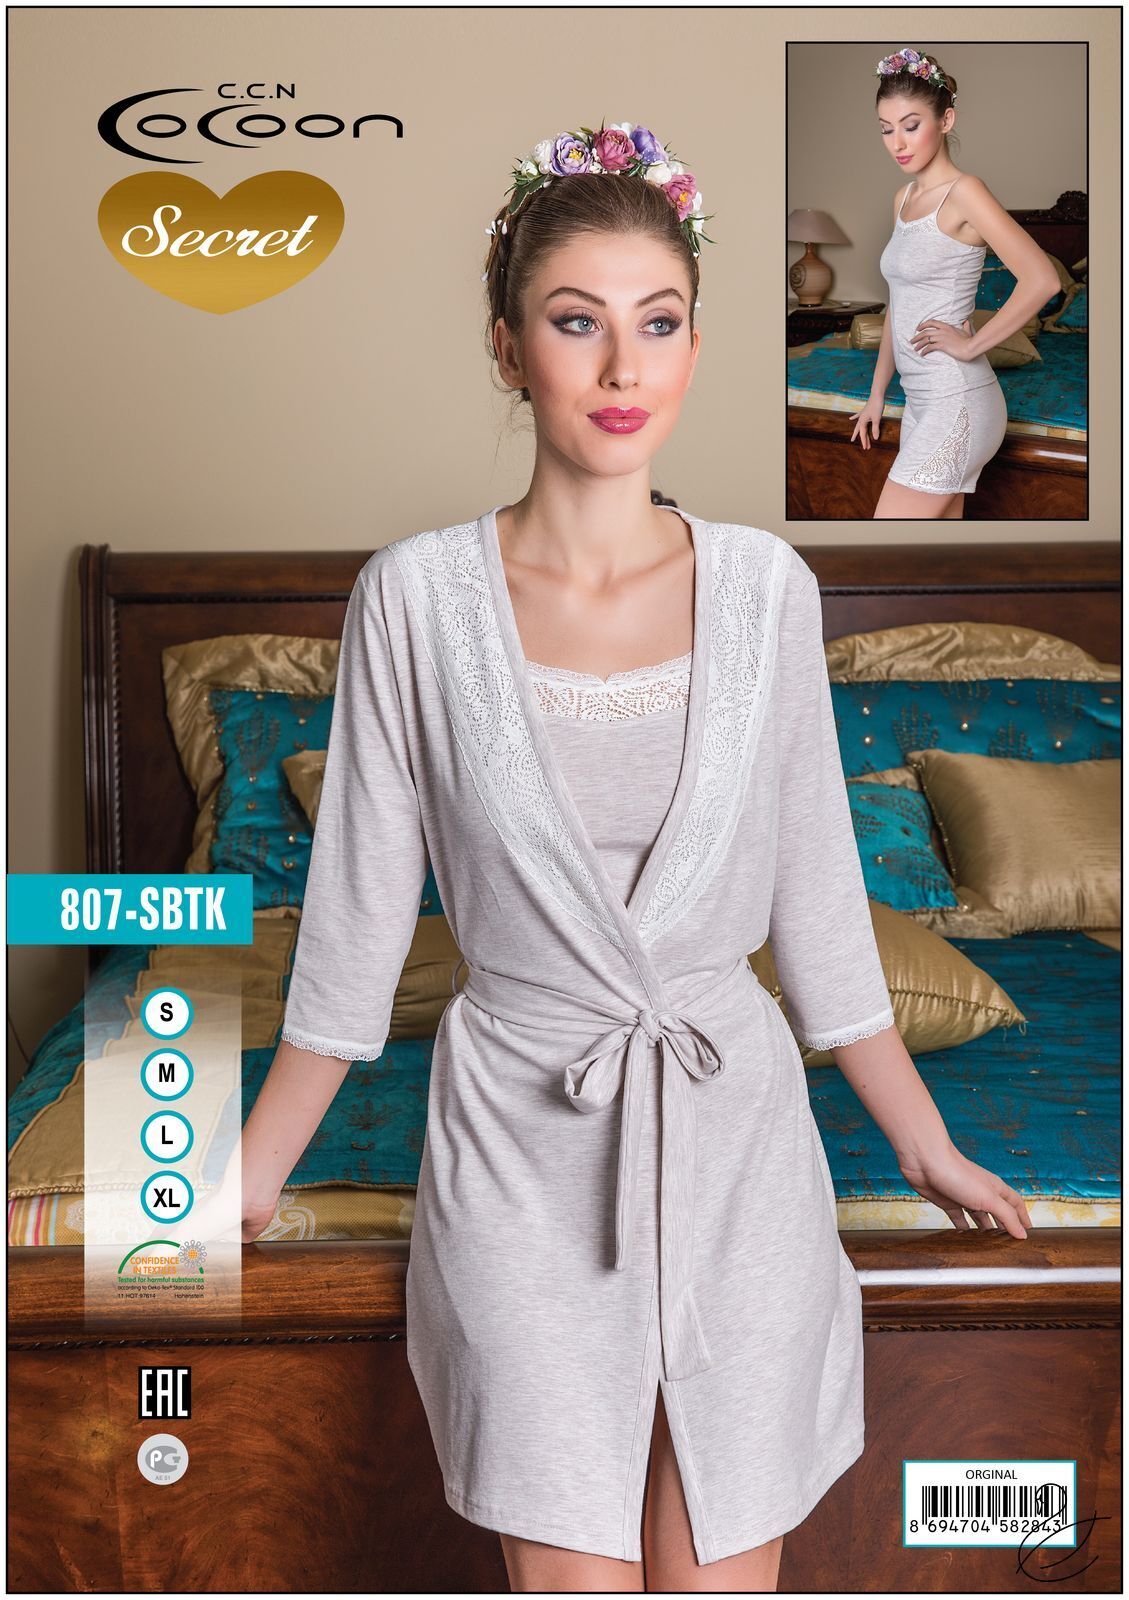 Купить Комплект из халата майки шорт COC 807 SBTK  в Украина в Одежда для дома и отдыха - уют в магазине Lingerie.ua